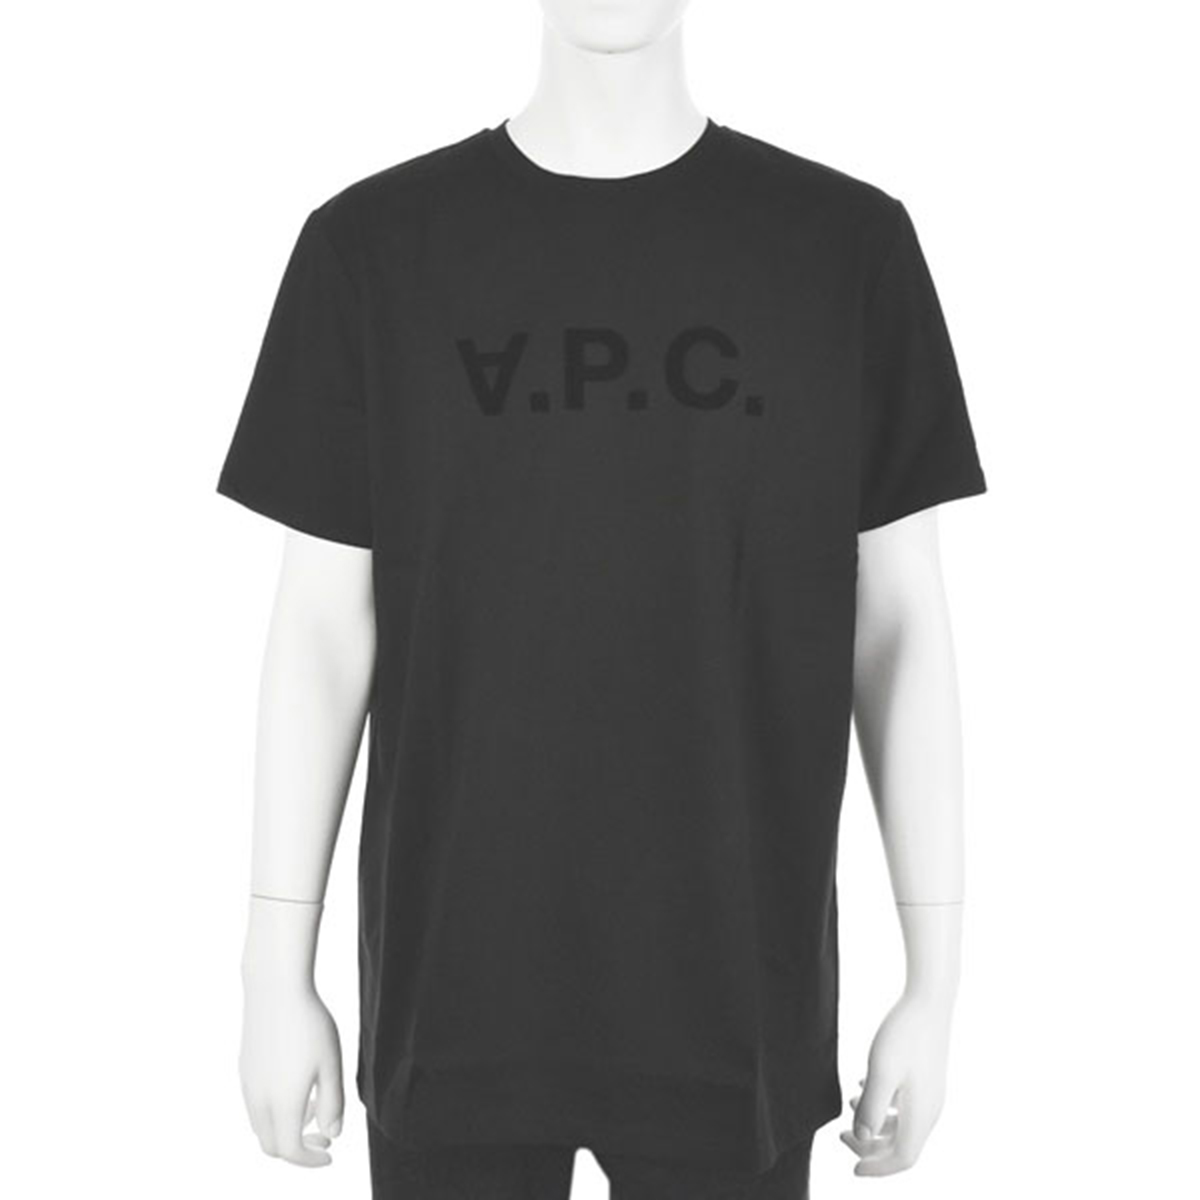 アーペーセー A.P.C. アパレル トップス 半袖 Tシャツ H26943 COBQX LZZ メンズ ブラック a.p.c ブランド おしゃれ 半そで tシャツ プレ